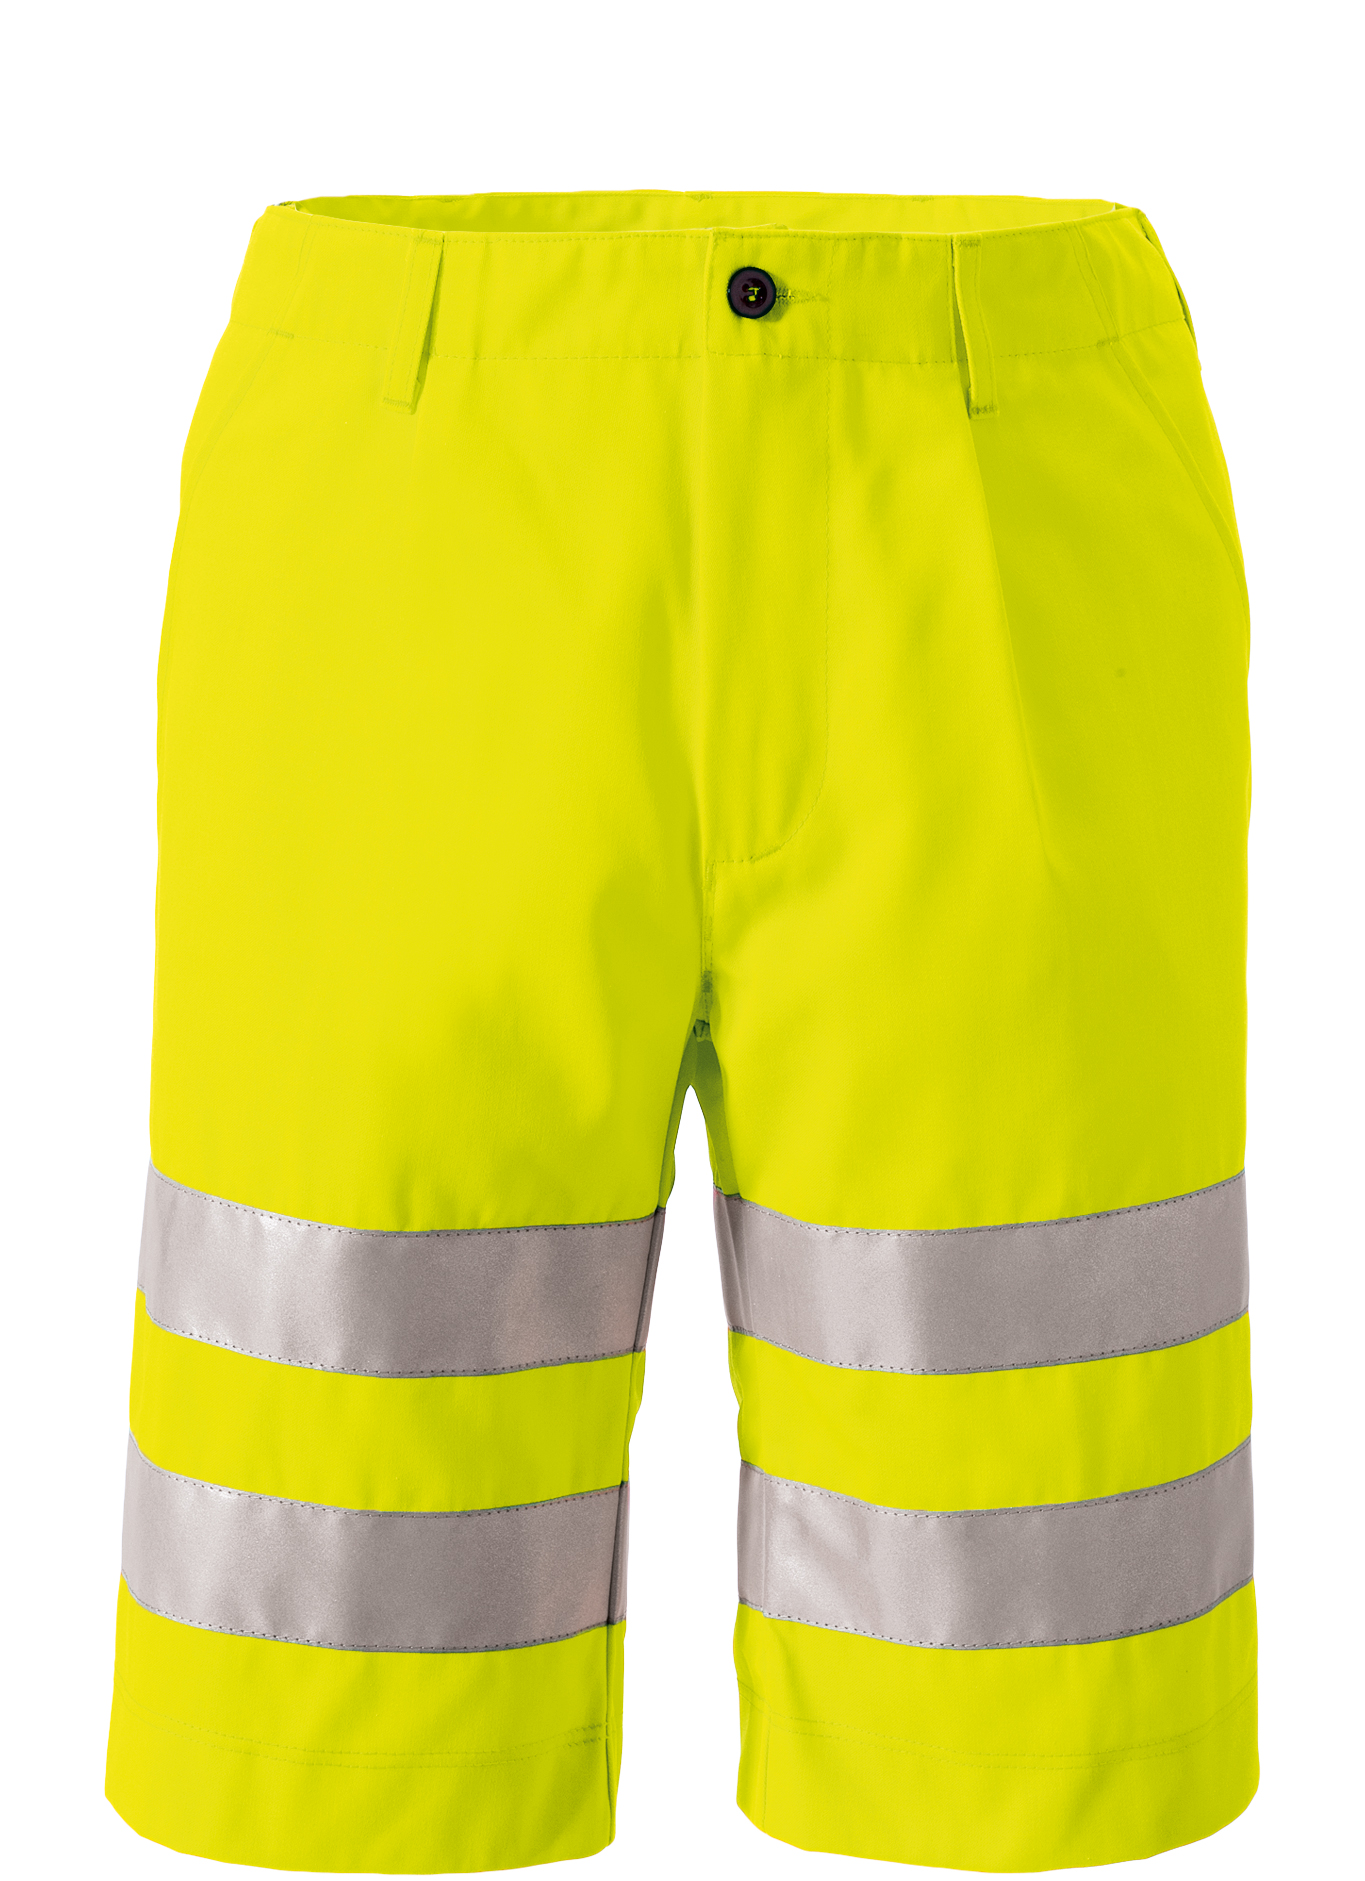 ROFA Warnschutzshort Arbeitsshorts Warnschutz Warnkleidung Shorts Scotchlite leuchtgelb schwarz ca 275 g